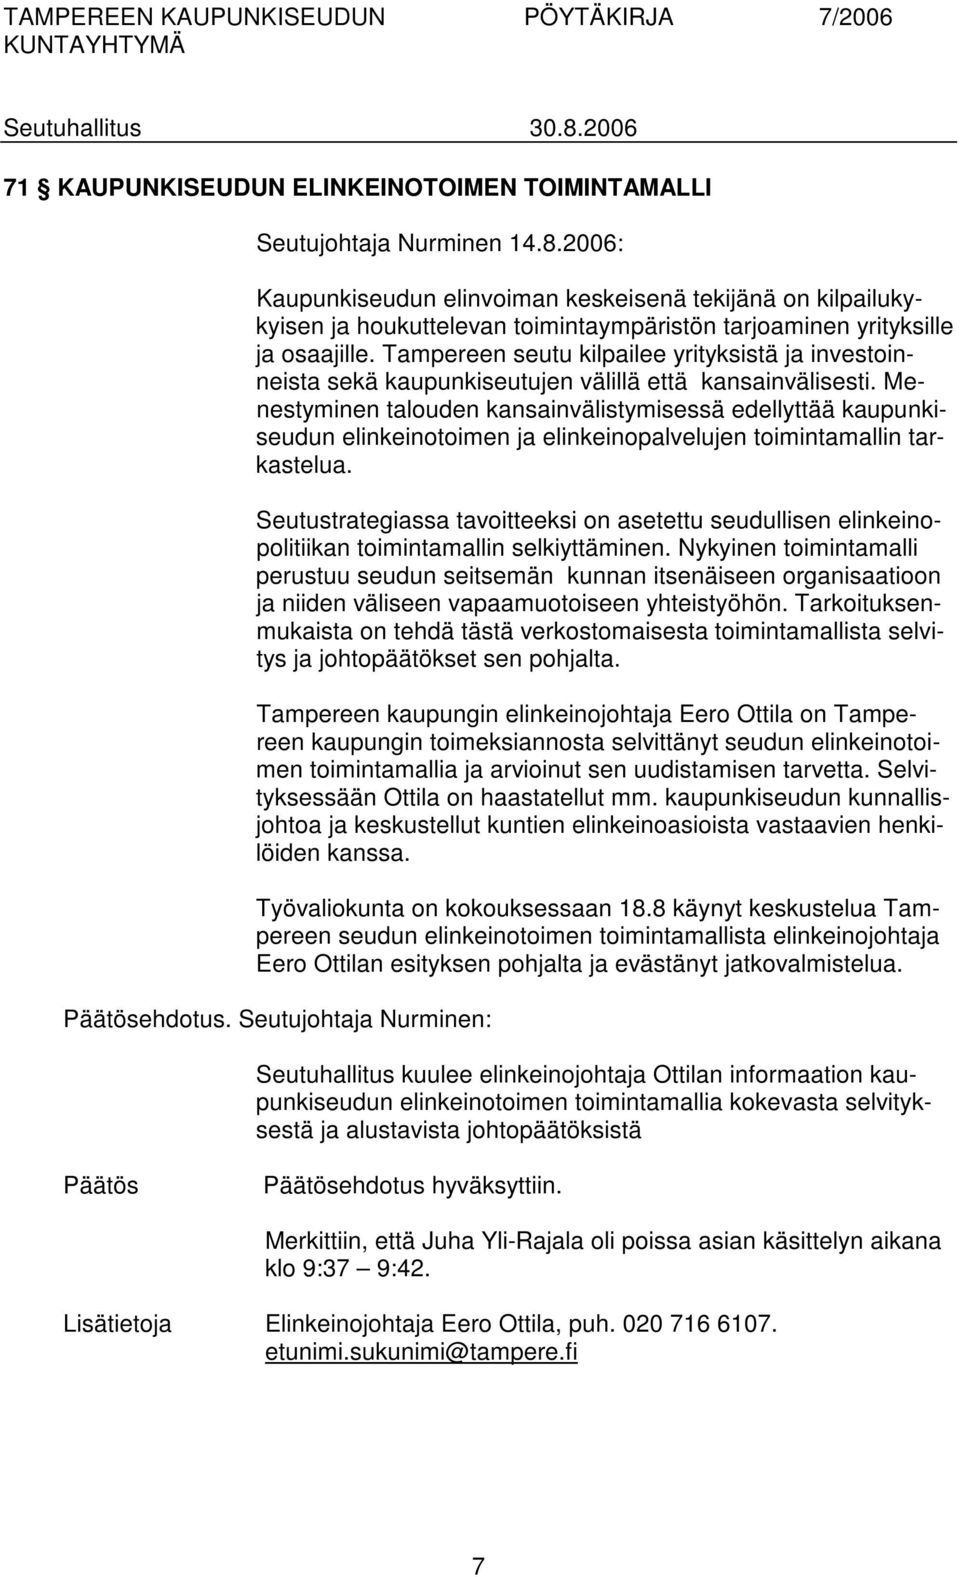 Tampereen seutu kilpailee yrityksistä ja investoinneista sekä kaupunkiseutujen välillä että kansainvälisesti.